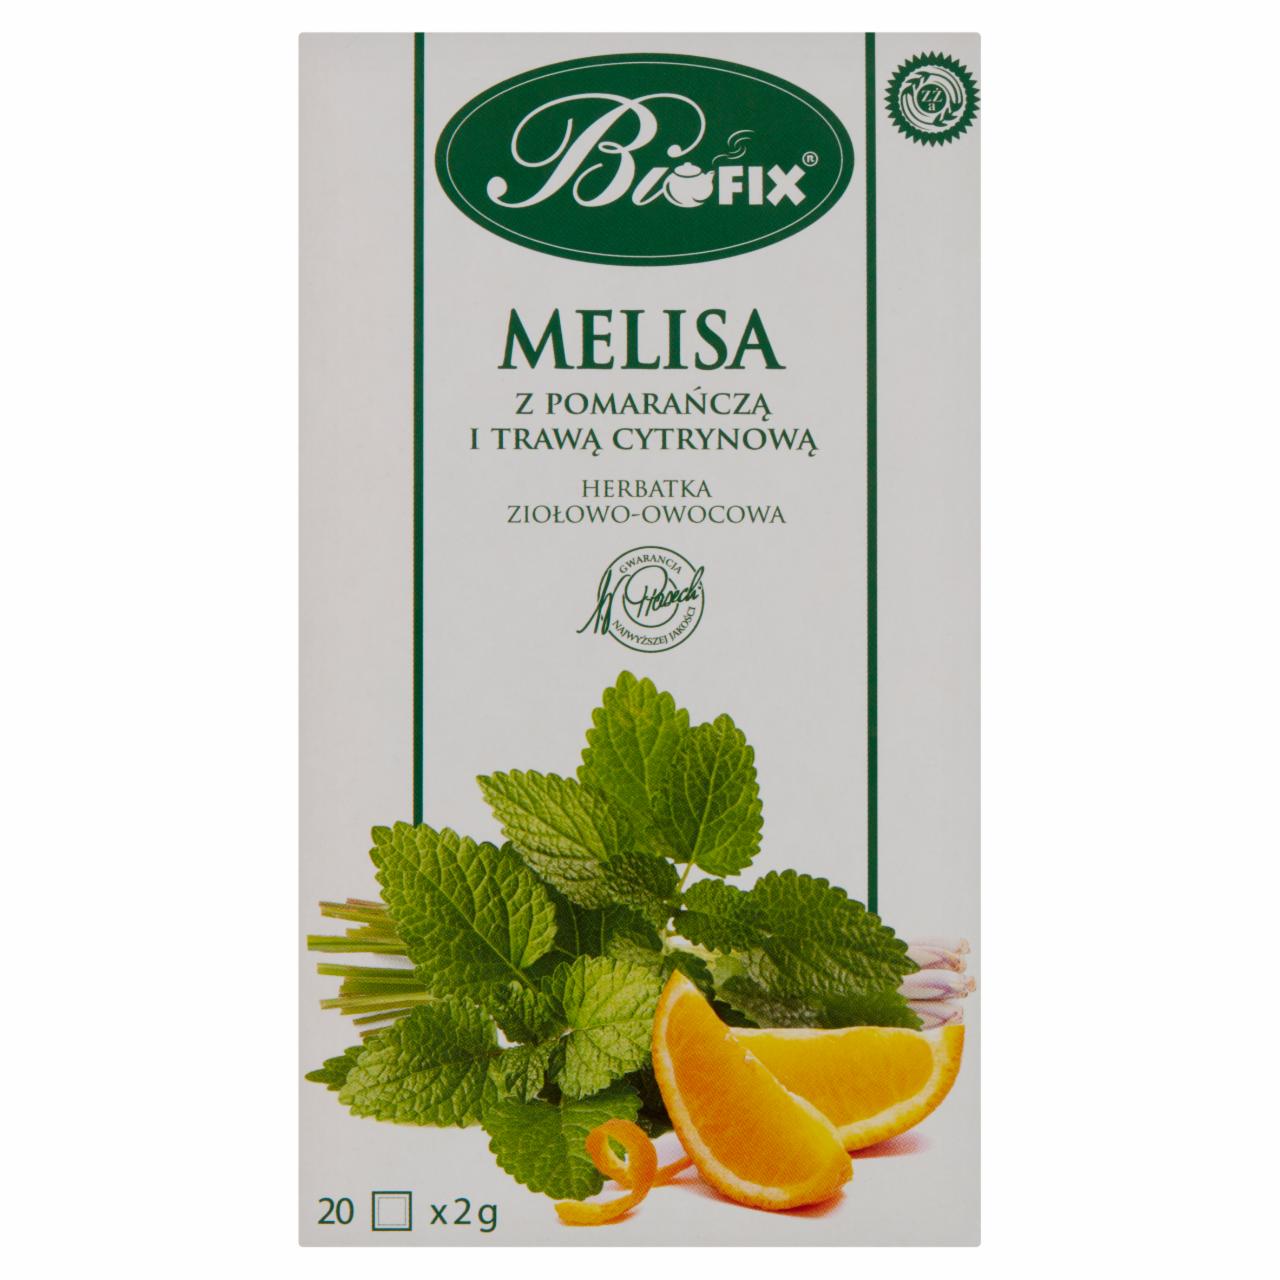 Zdjęcia - Bifix Herbatka ziołowo-owocowa melisa z pomarańczą i trawą cytrynową 40 g (20 x 2 g)